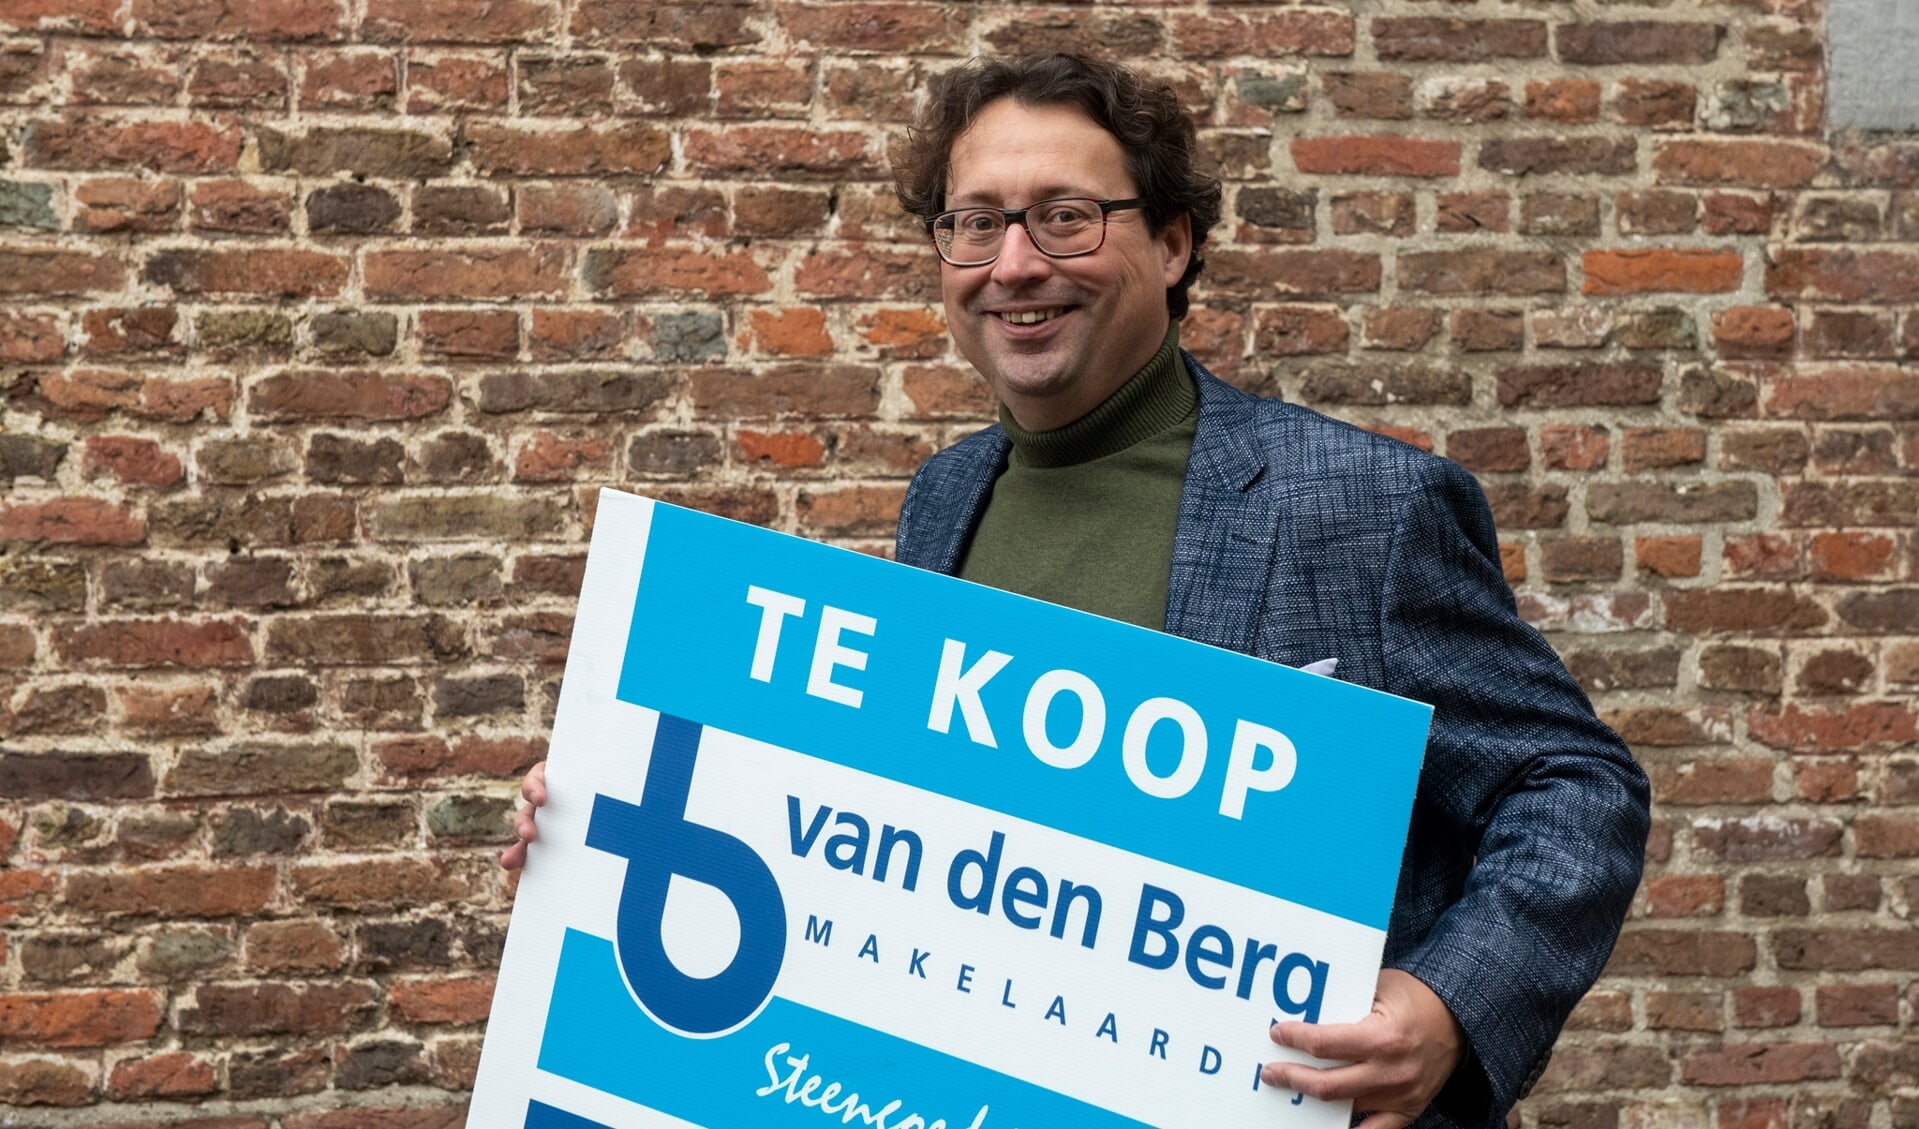 Martijn van den Berg